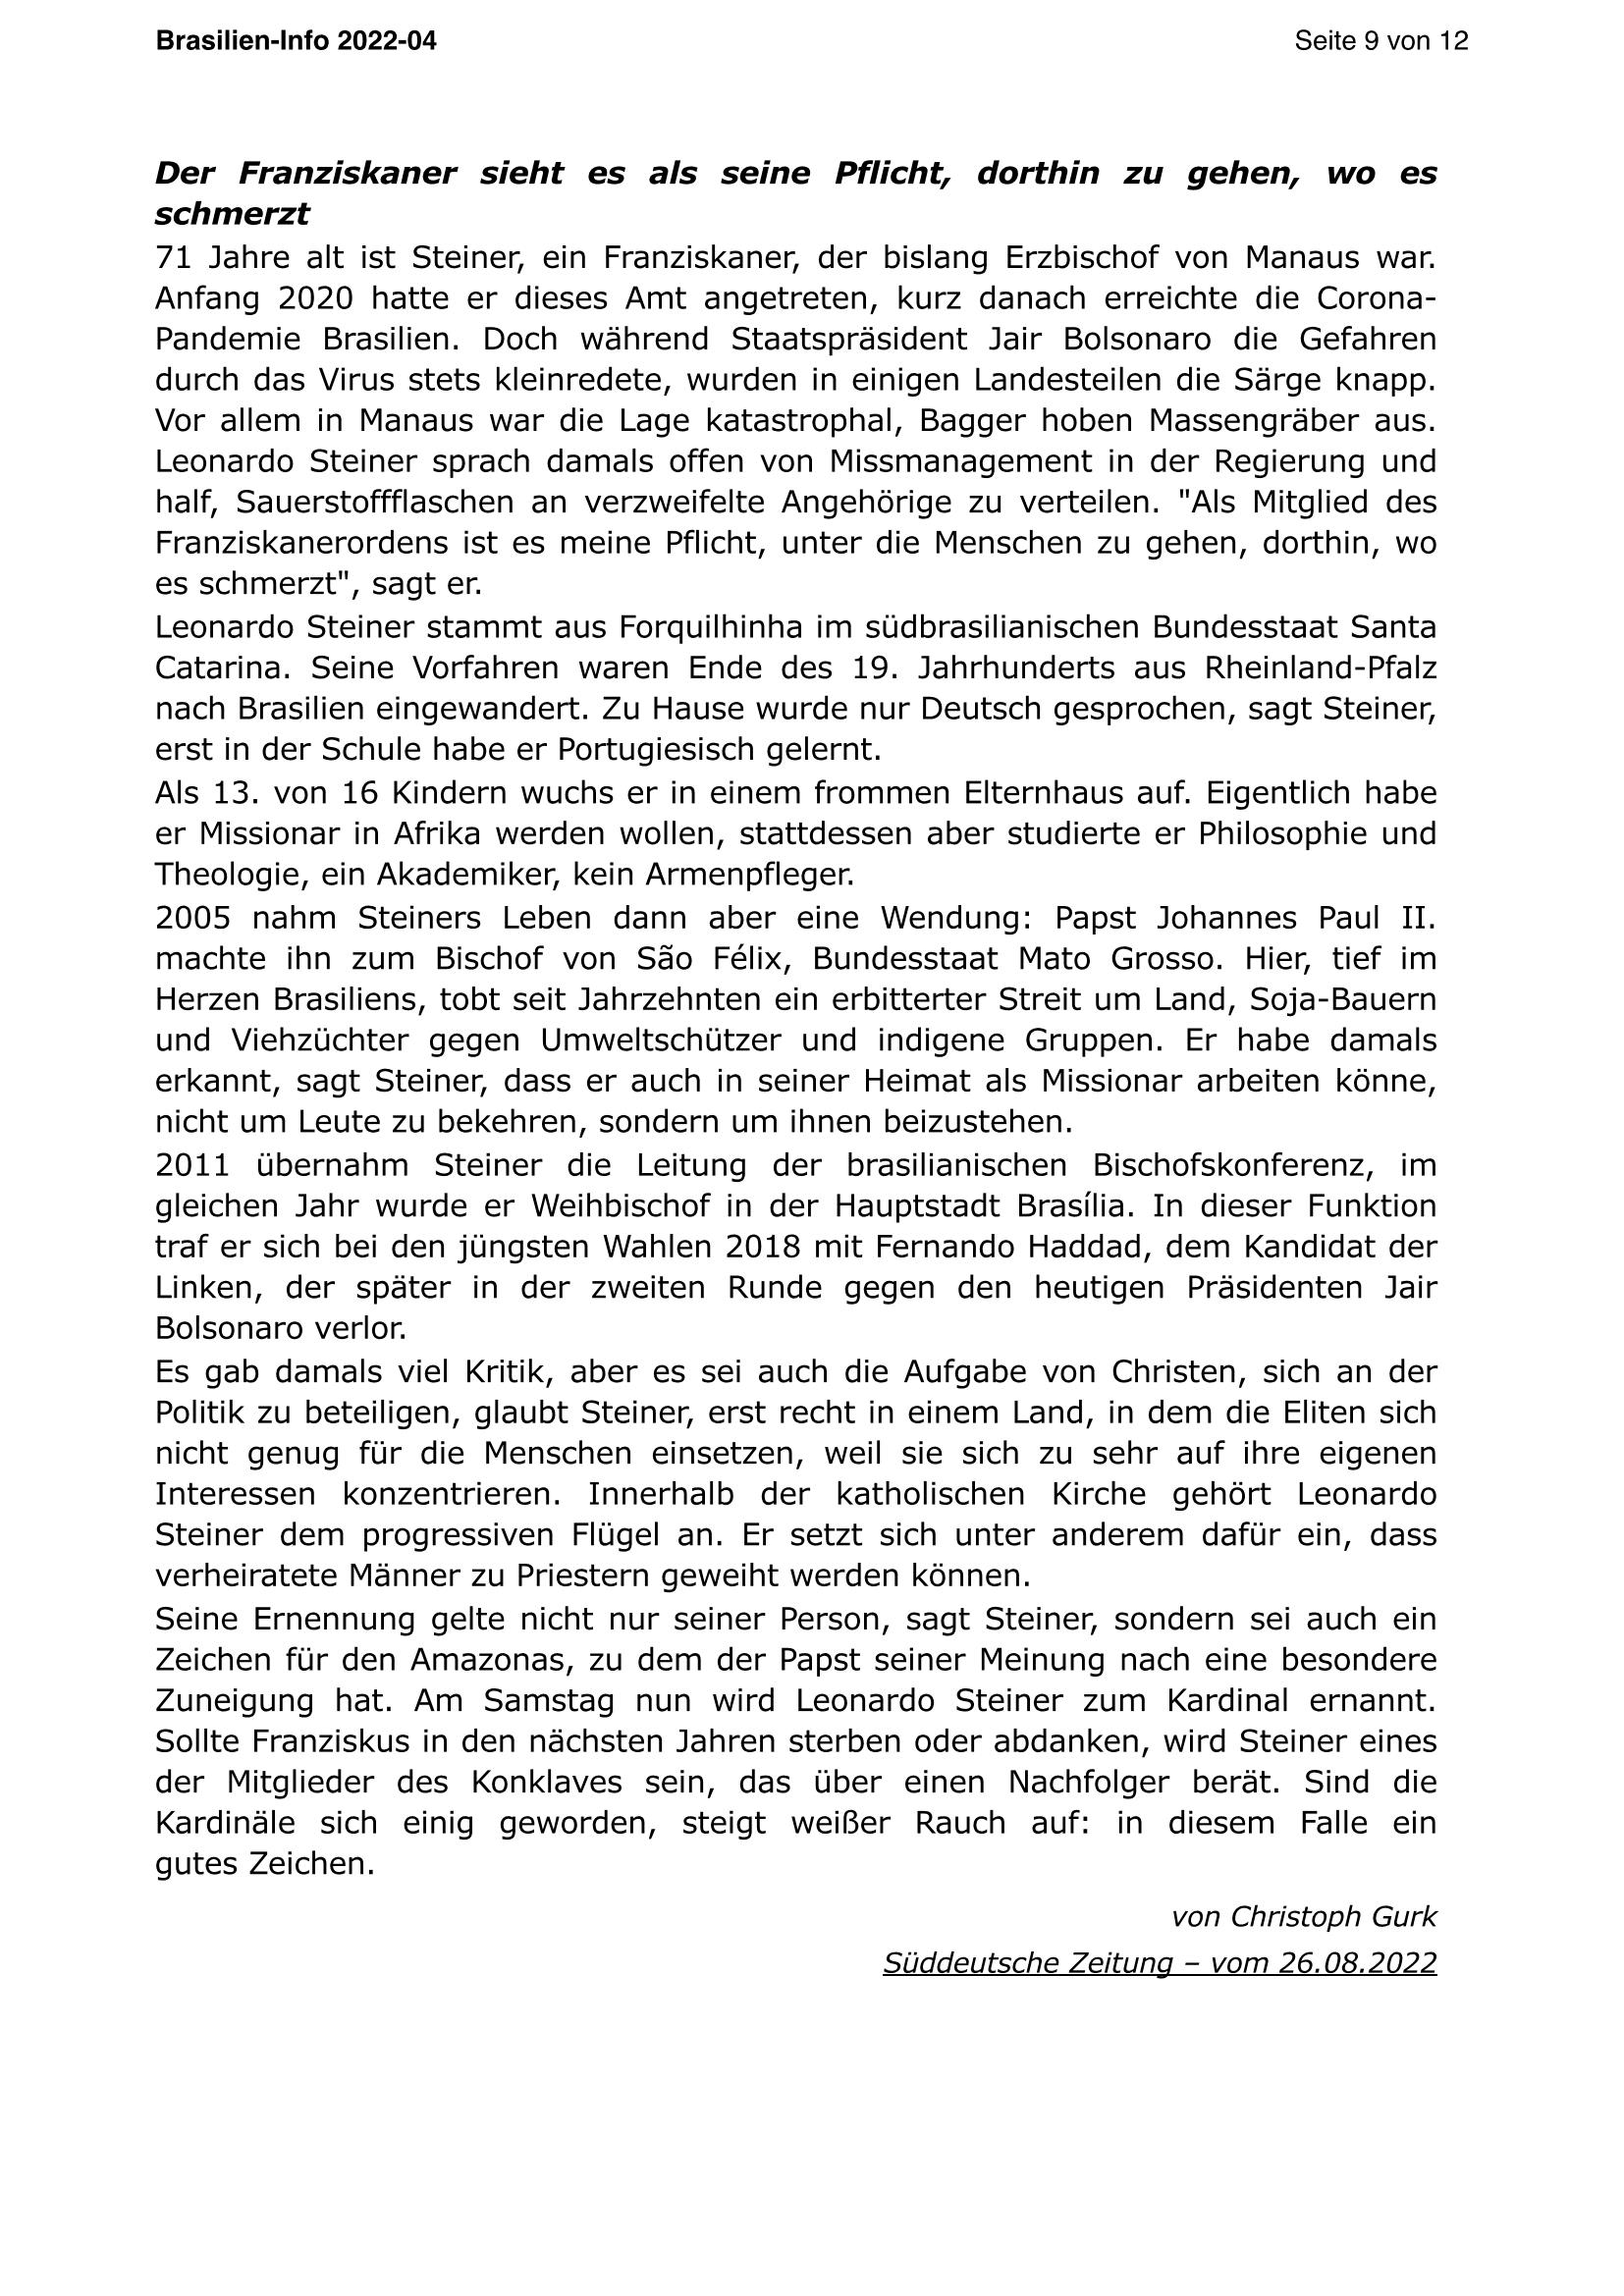 Brasilien Info 04 2022 Page 9